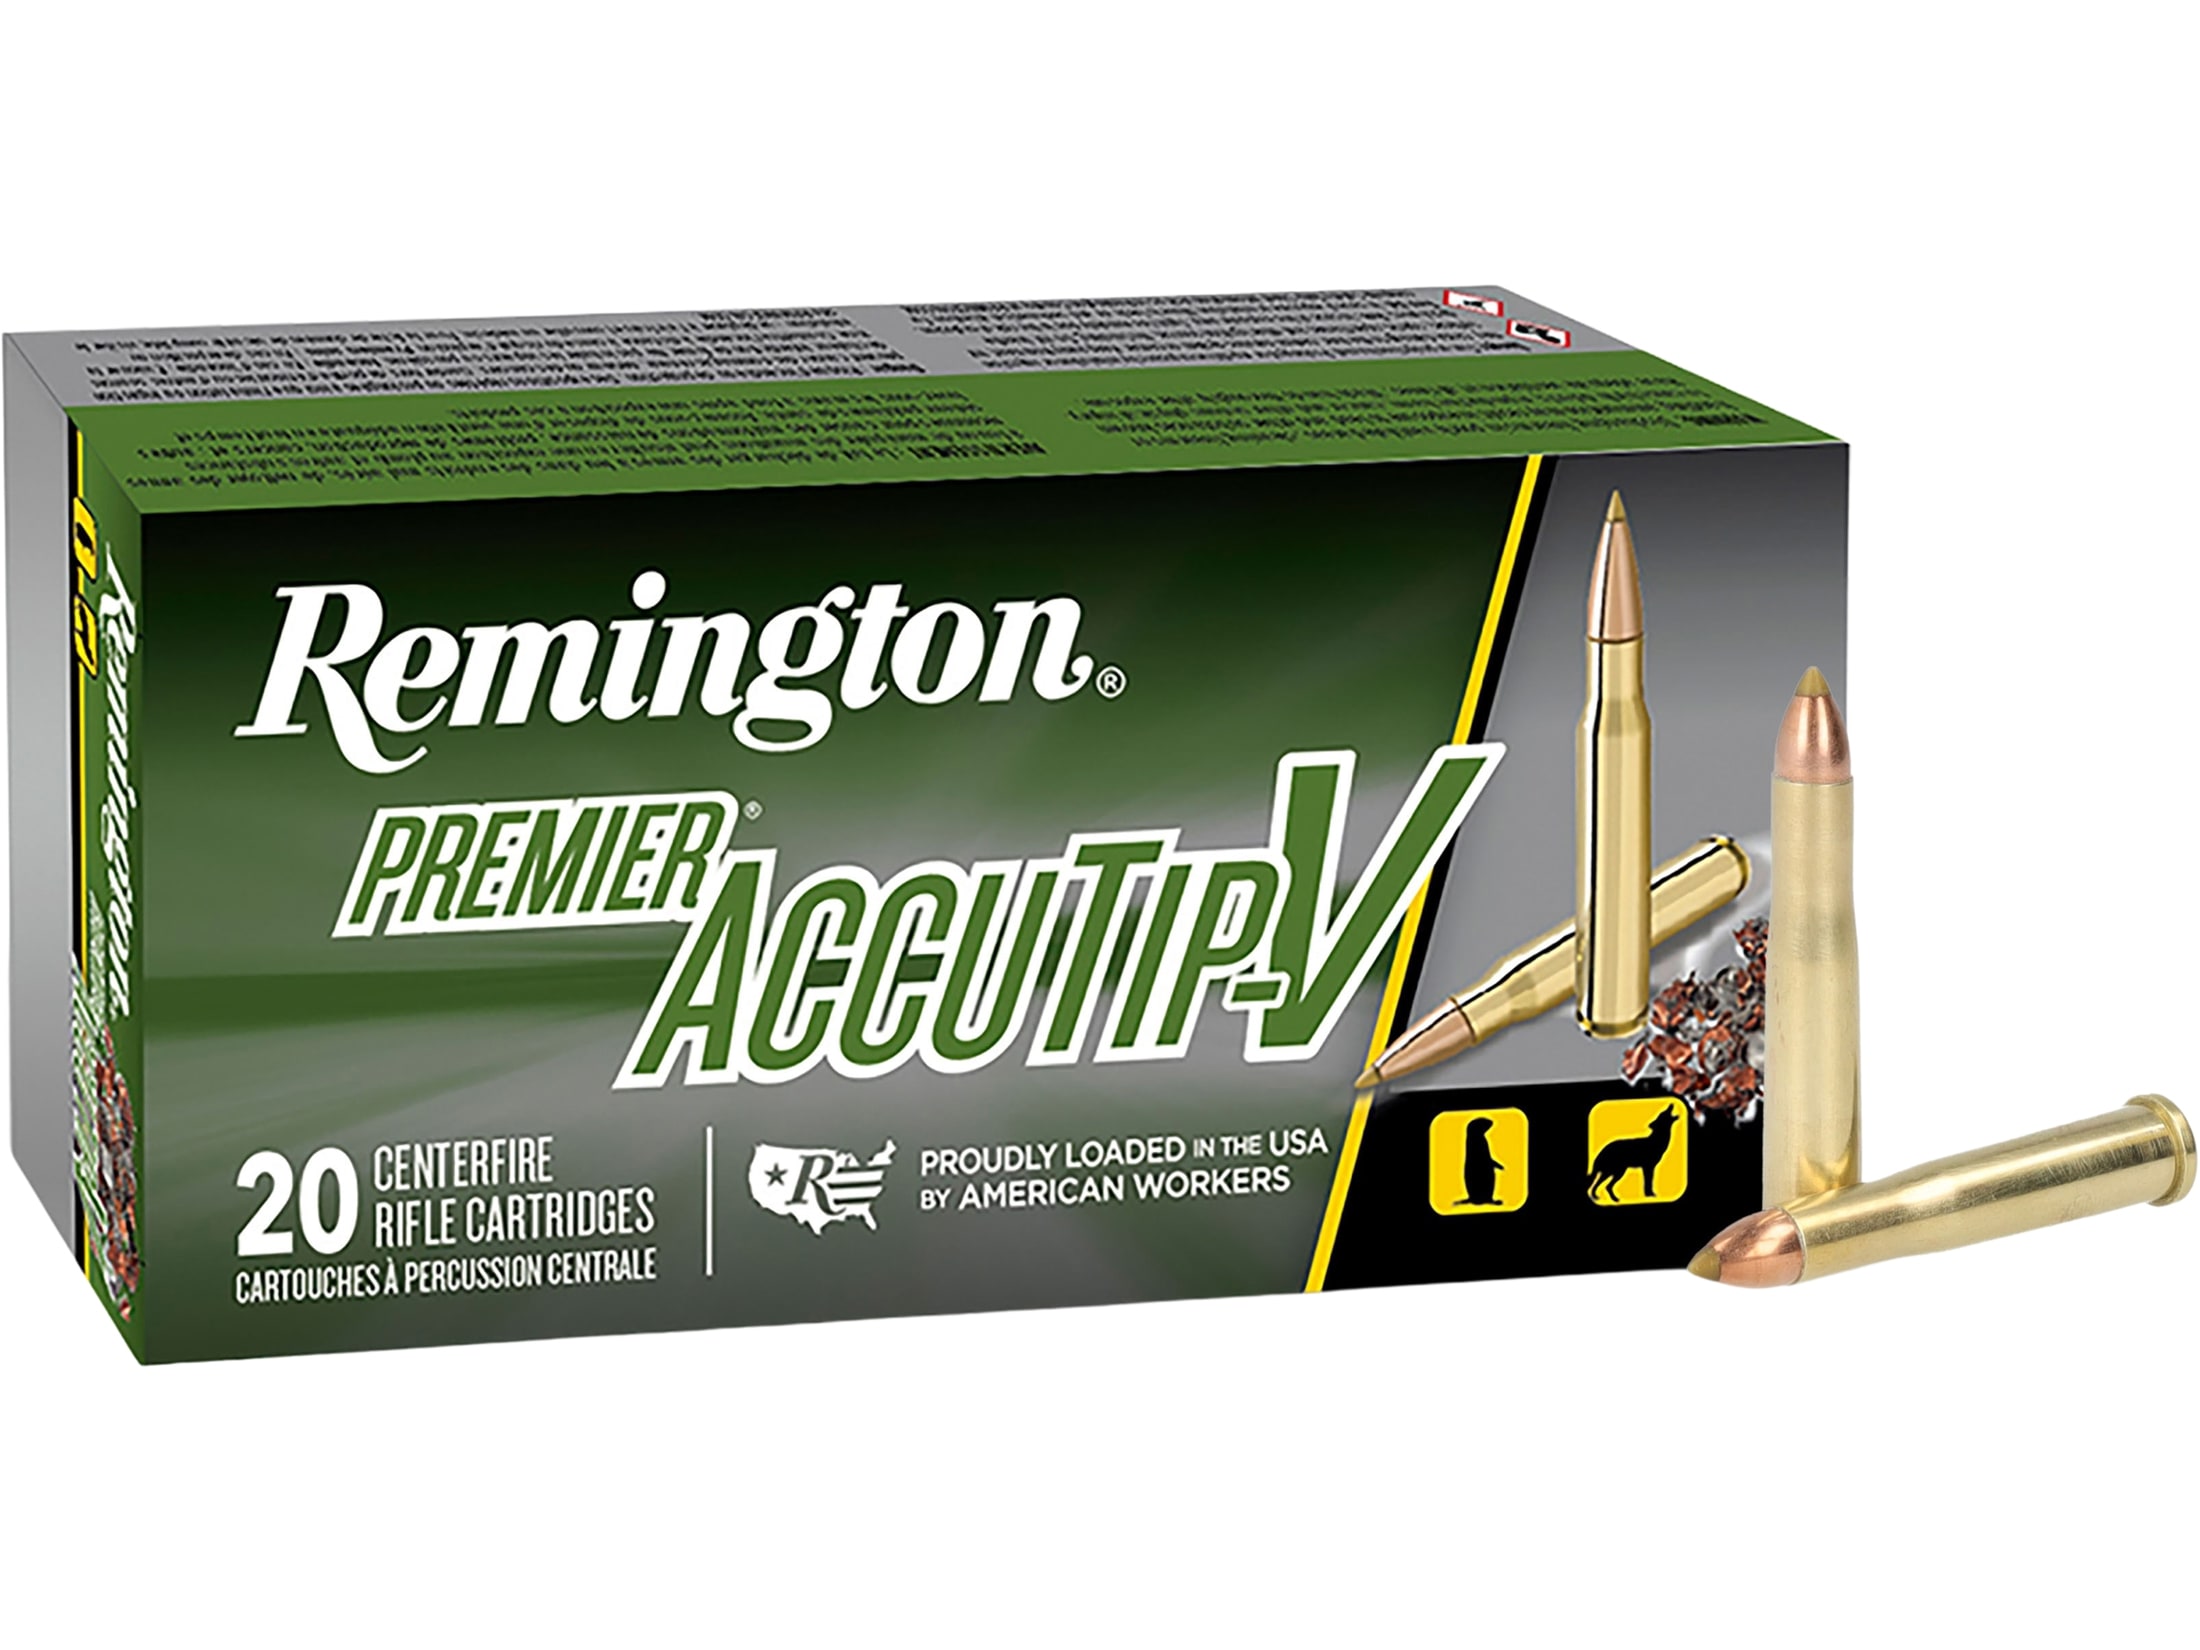 Remington Premier Varmint Ammo 22 Hornet 35 Grain AccuTip Box of 50.